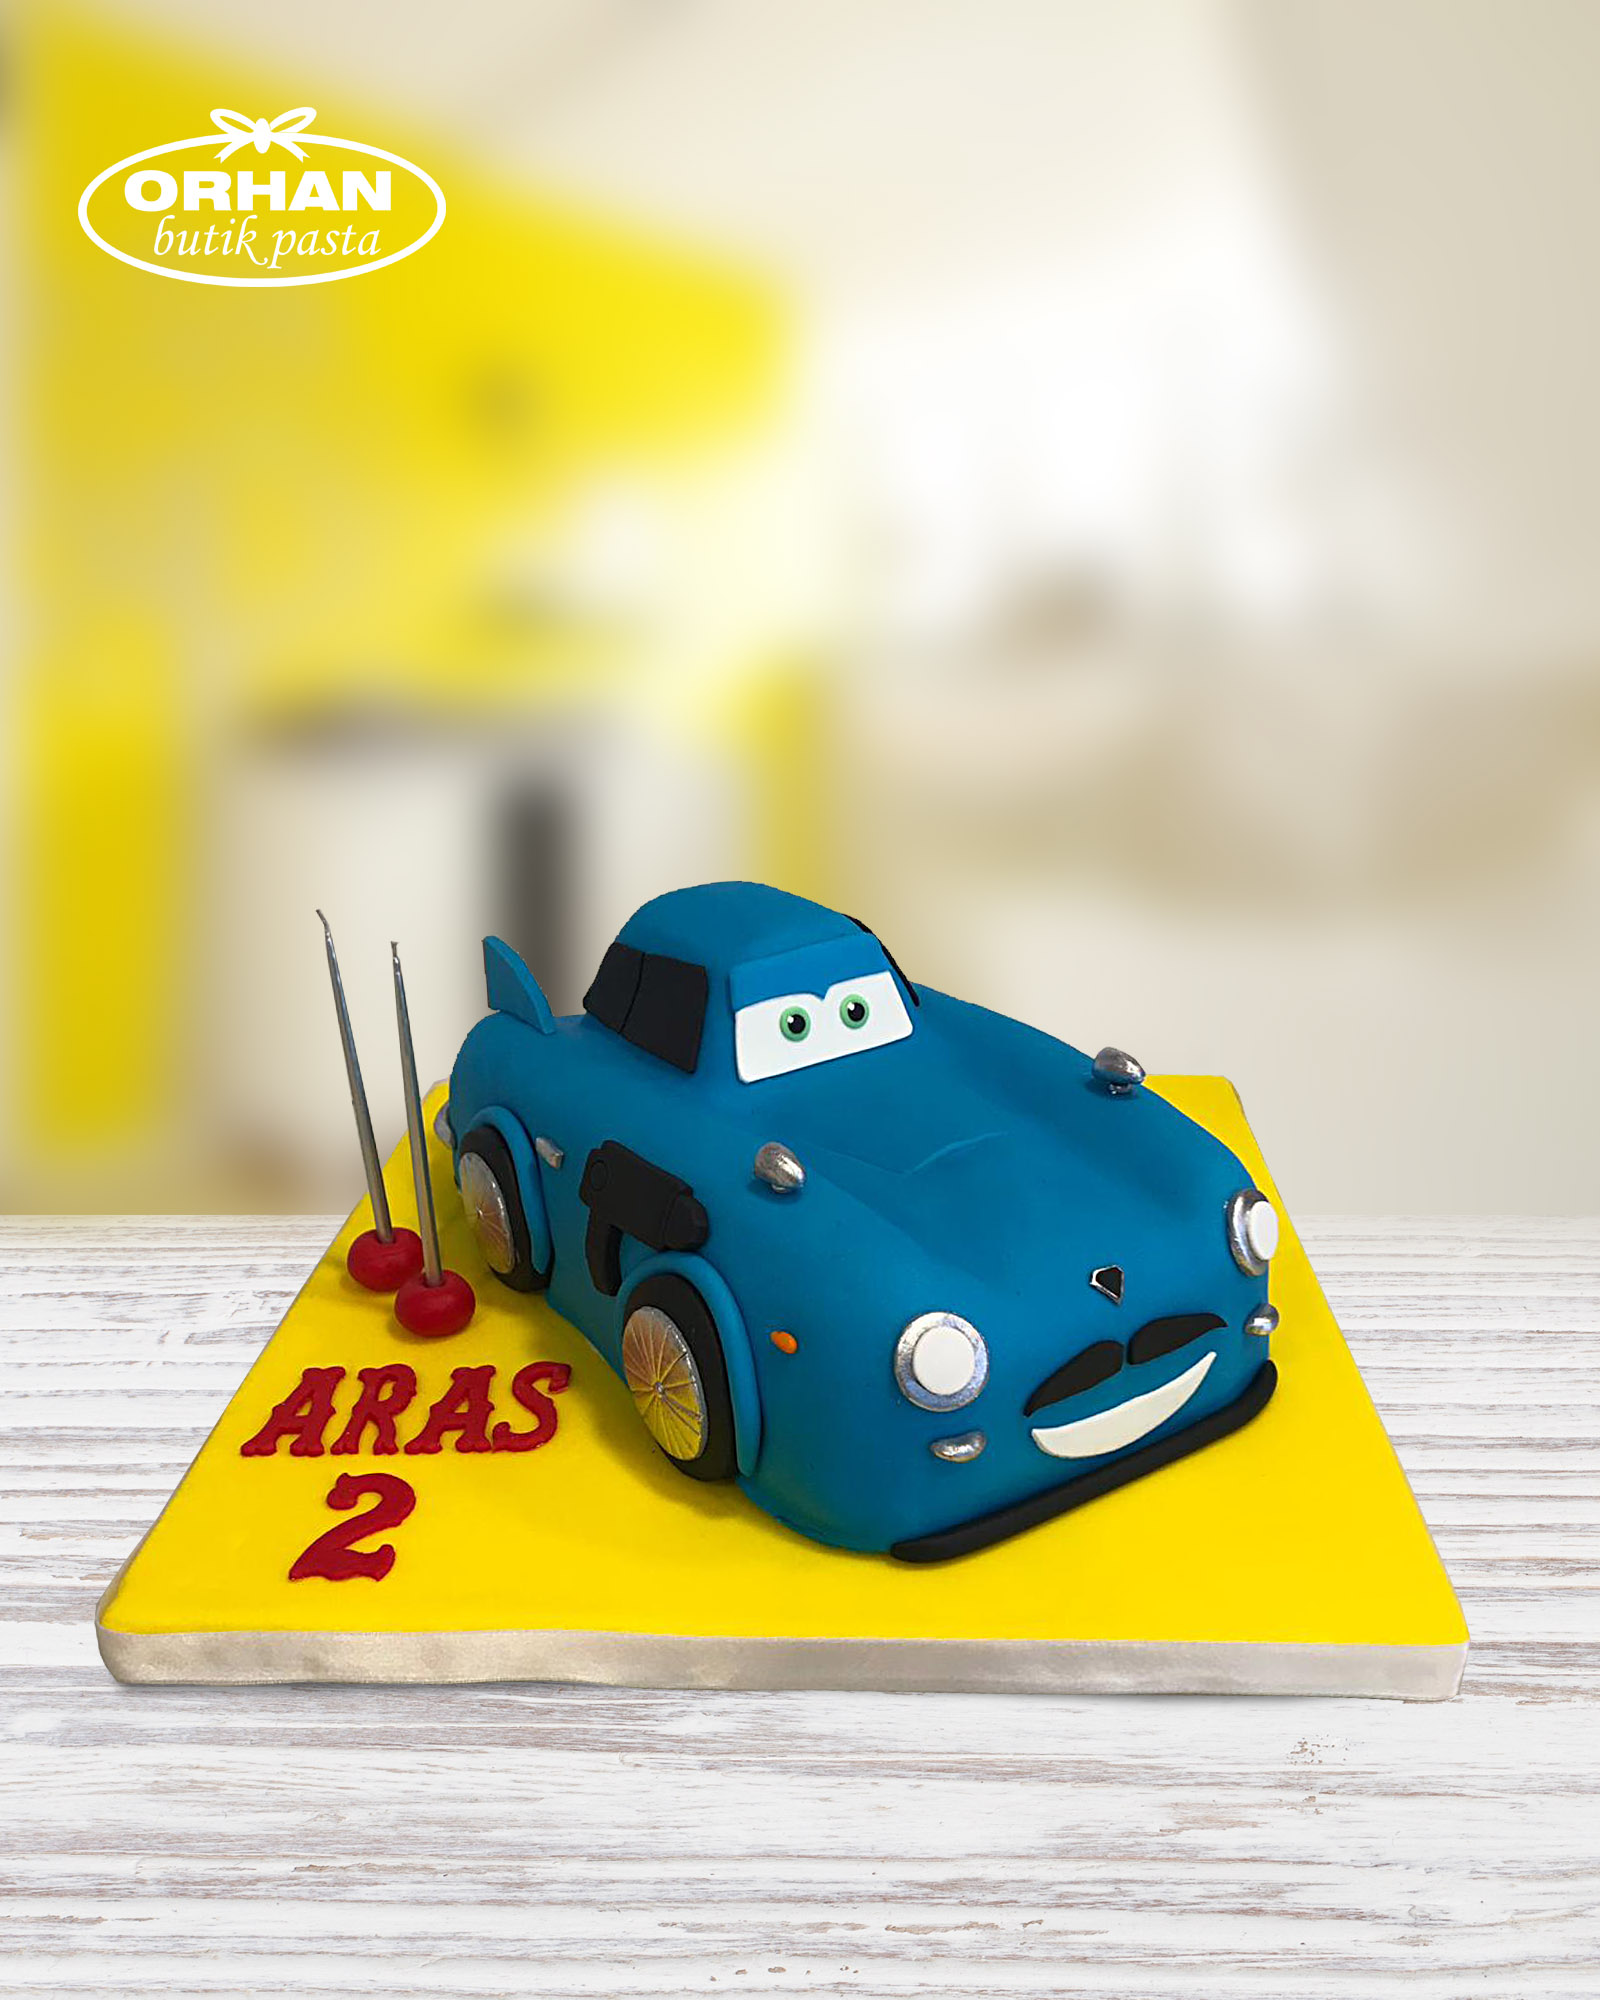 The Cars Doğum Günü Pastası